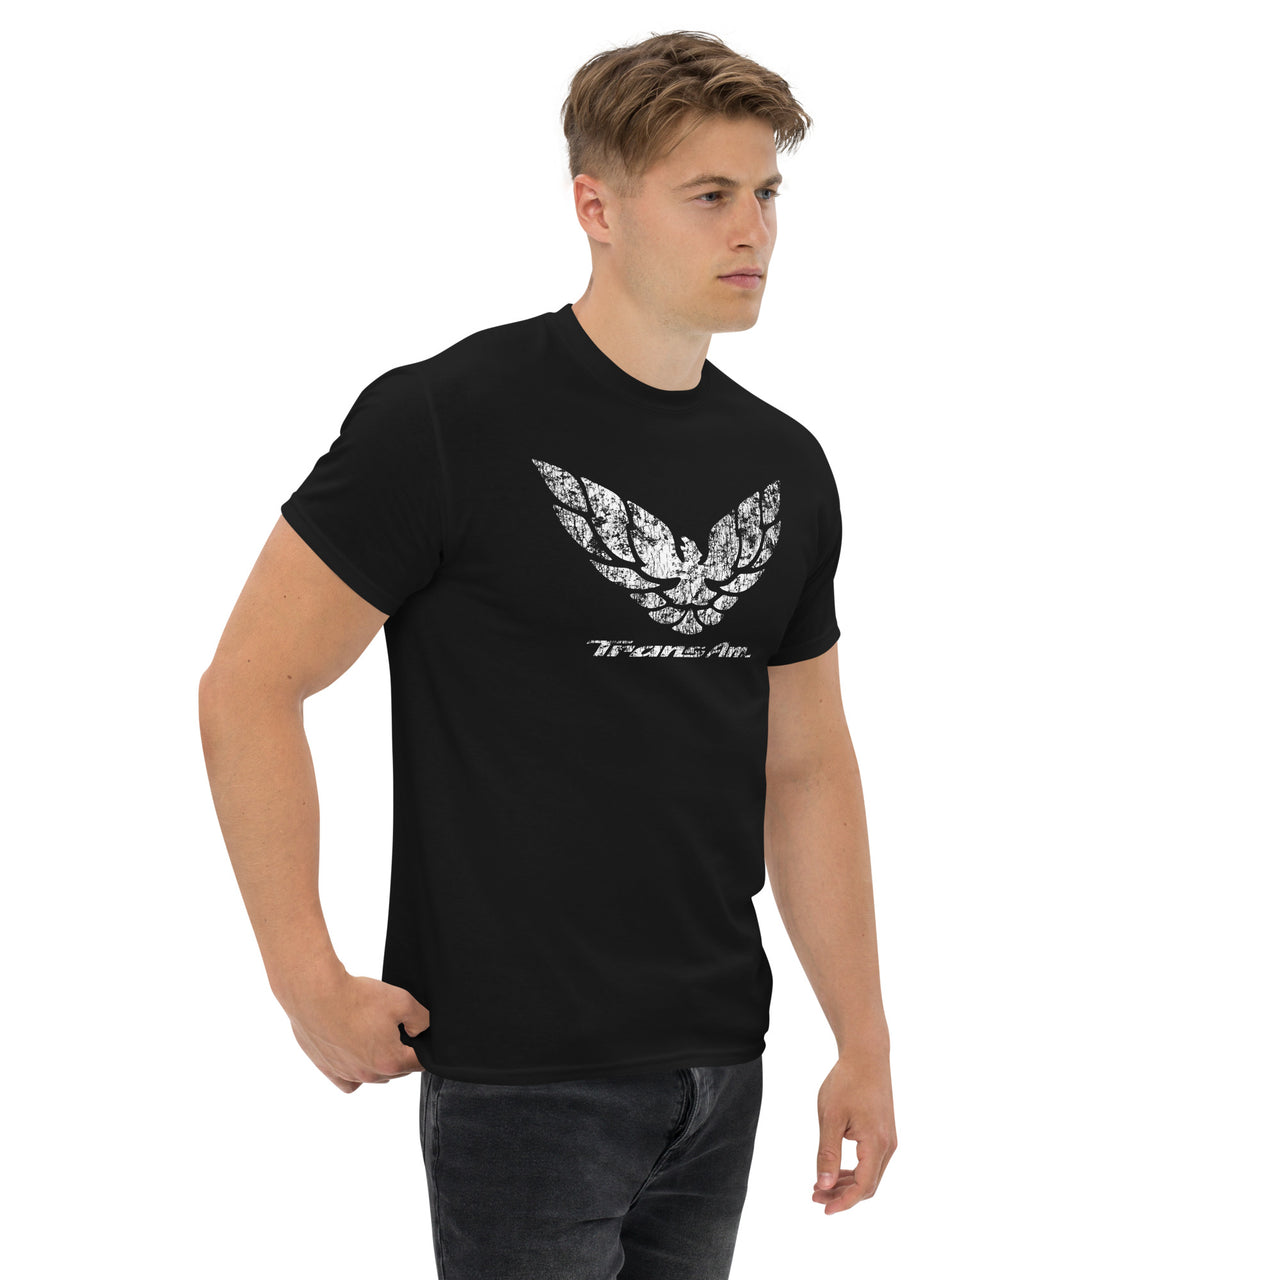 90s Trans Am Firebird Logo T-Shirt modeled in black